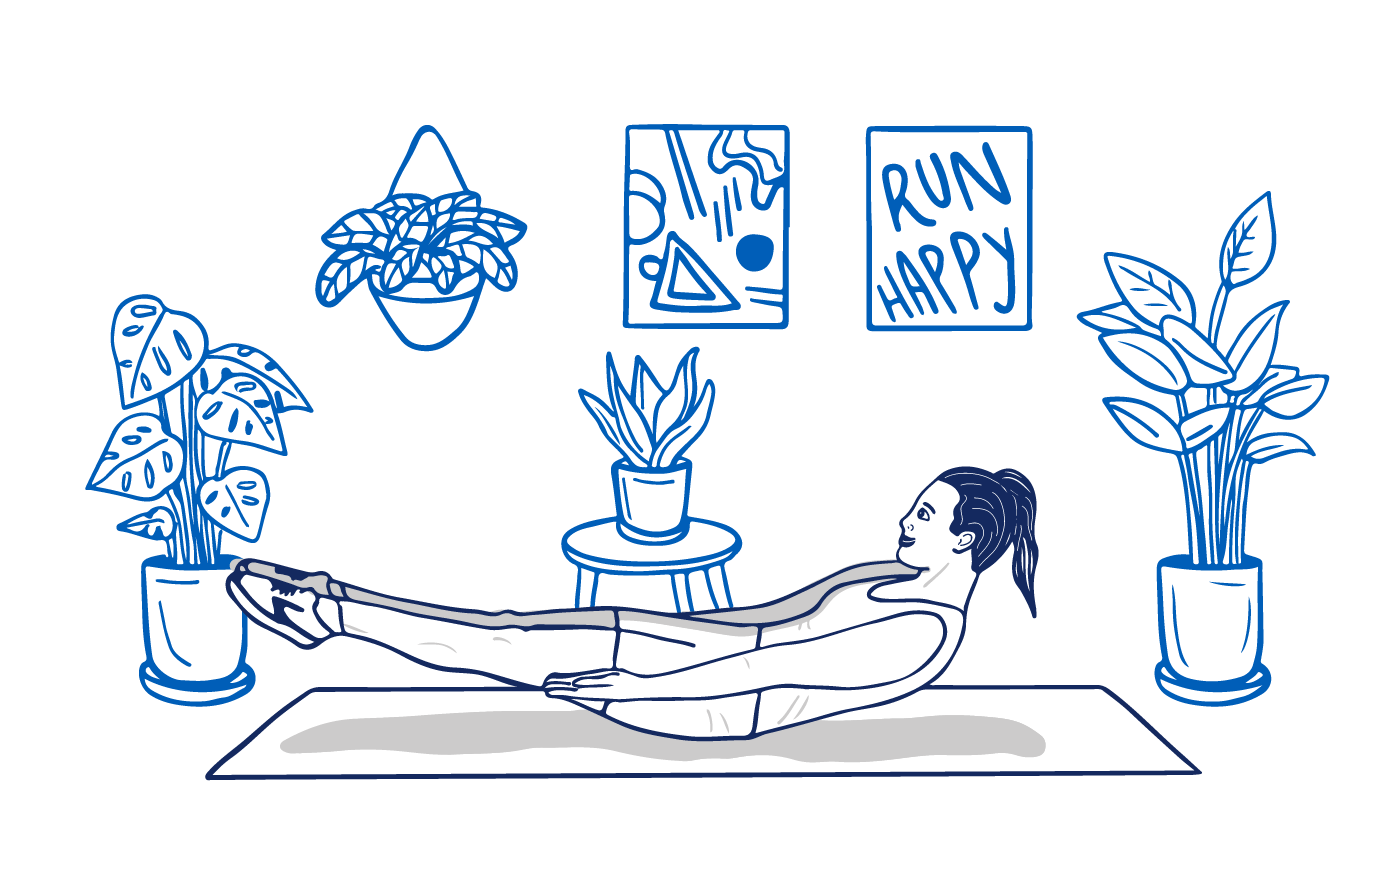 Une illustration d’une femme faisant des abdominaux en V sur un tapis de yoga dans son salon entouré de plantes d’intérieur, une peinture d’art abstrait et une affiche qui dit « Run Happy ».